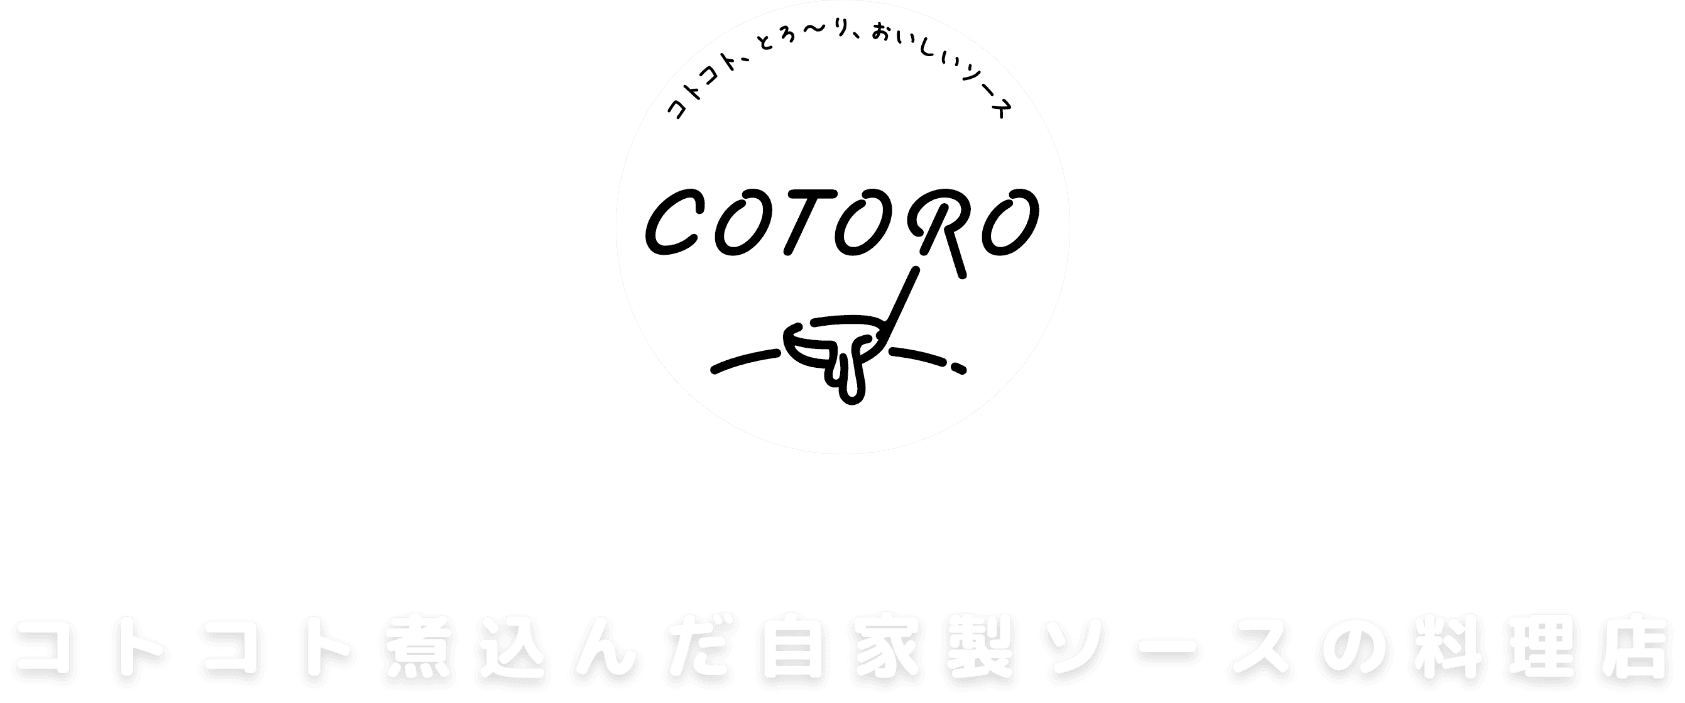 コトコト、とろ〜り、おいしいソース COTORO コトコト煮込んだ自家製ソースの料理店